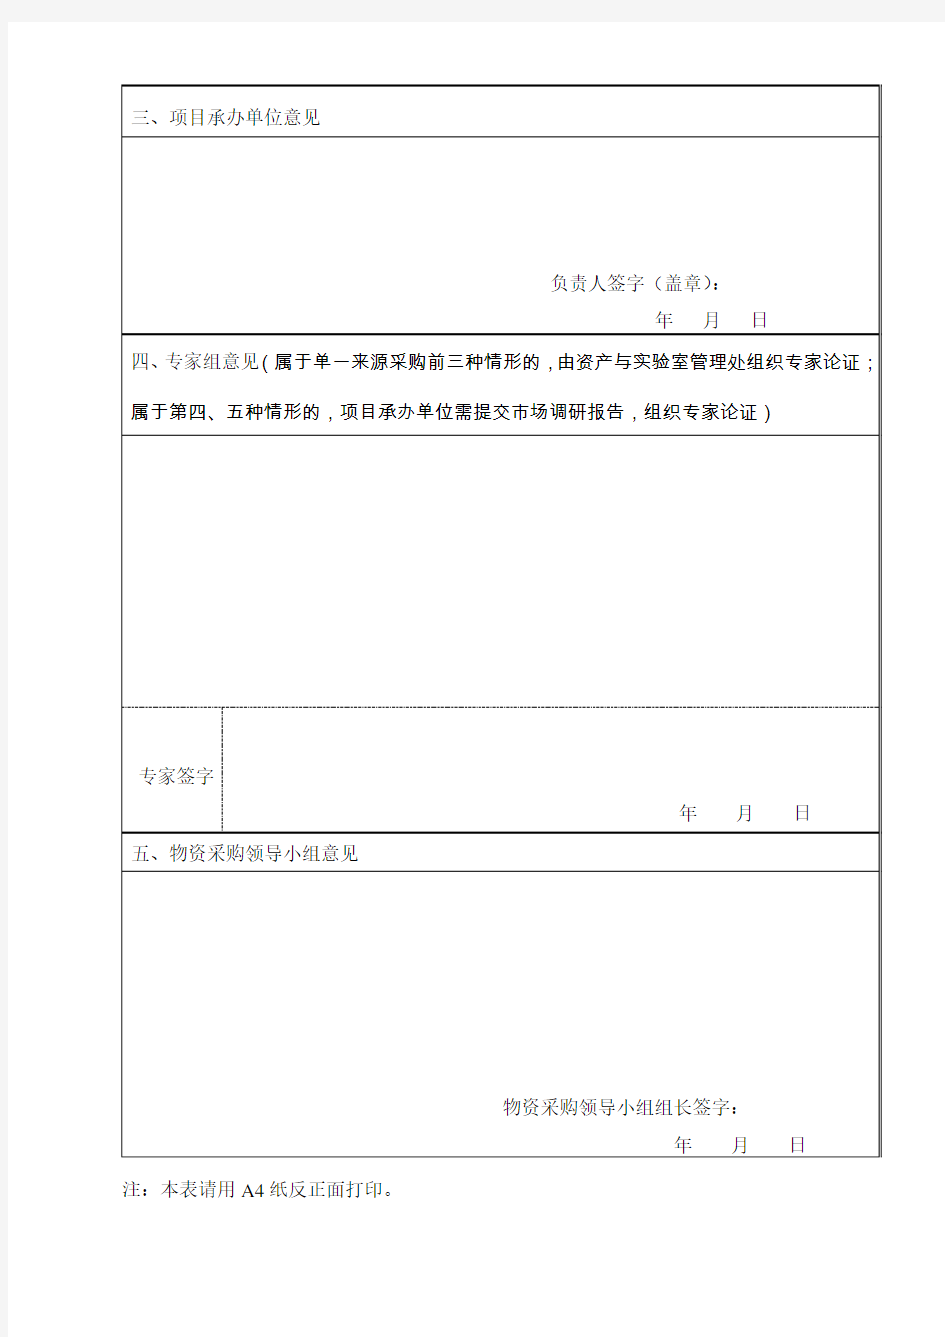 南京理工大学泰州科技学院单一来源采购论证报告